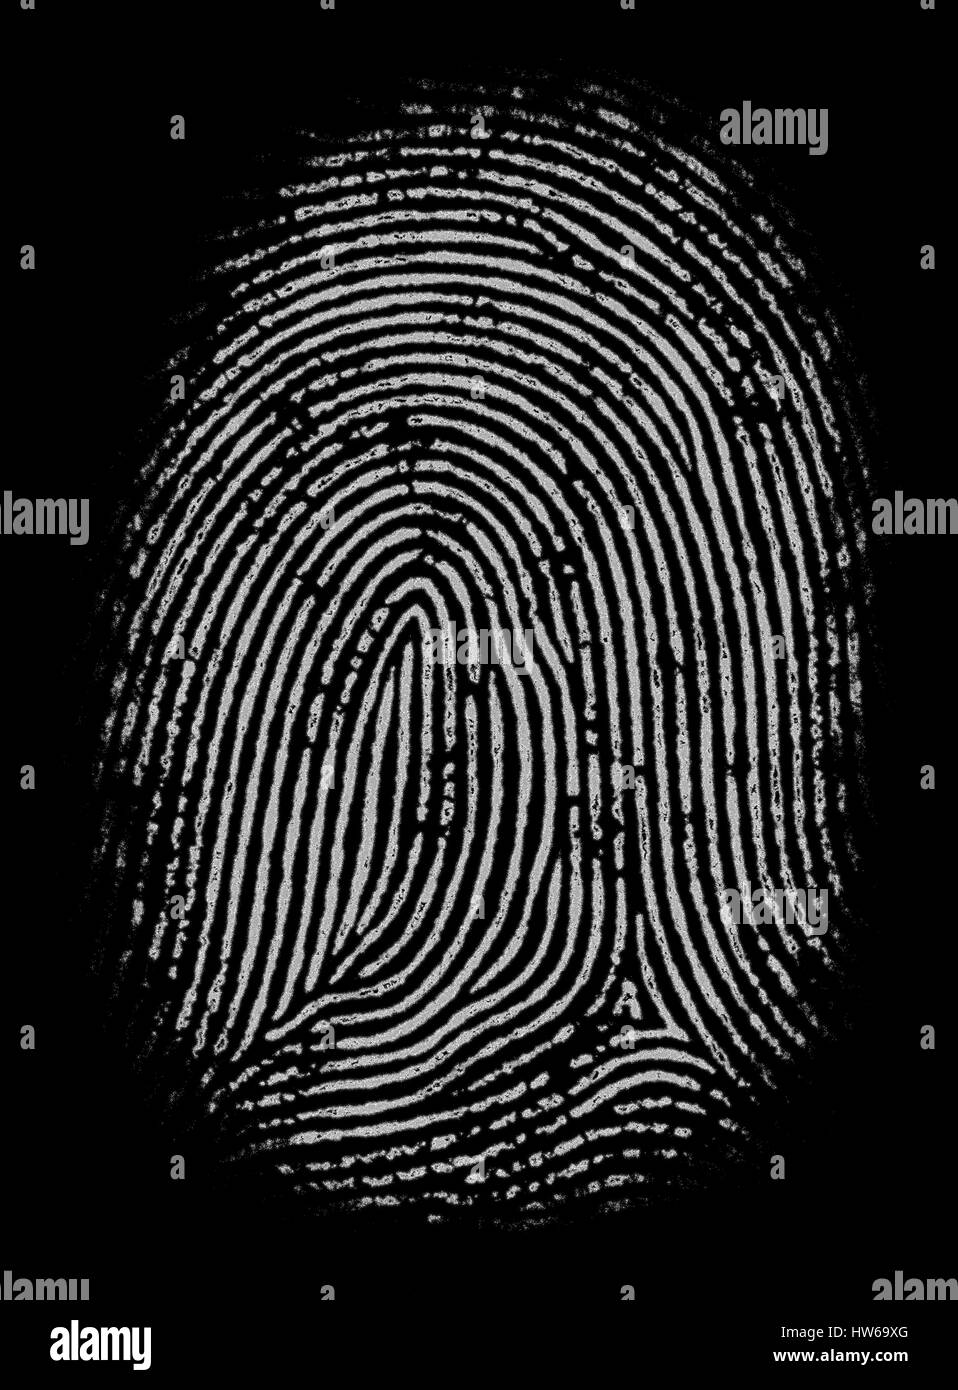 Fingerprint against black background, illustration. Stock Photo